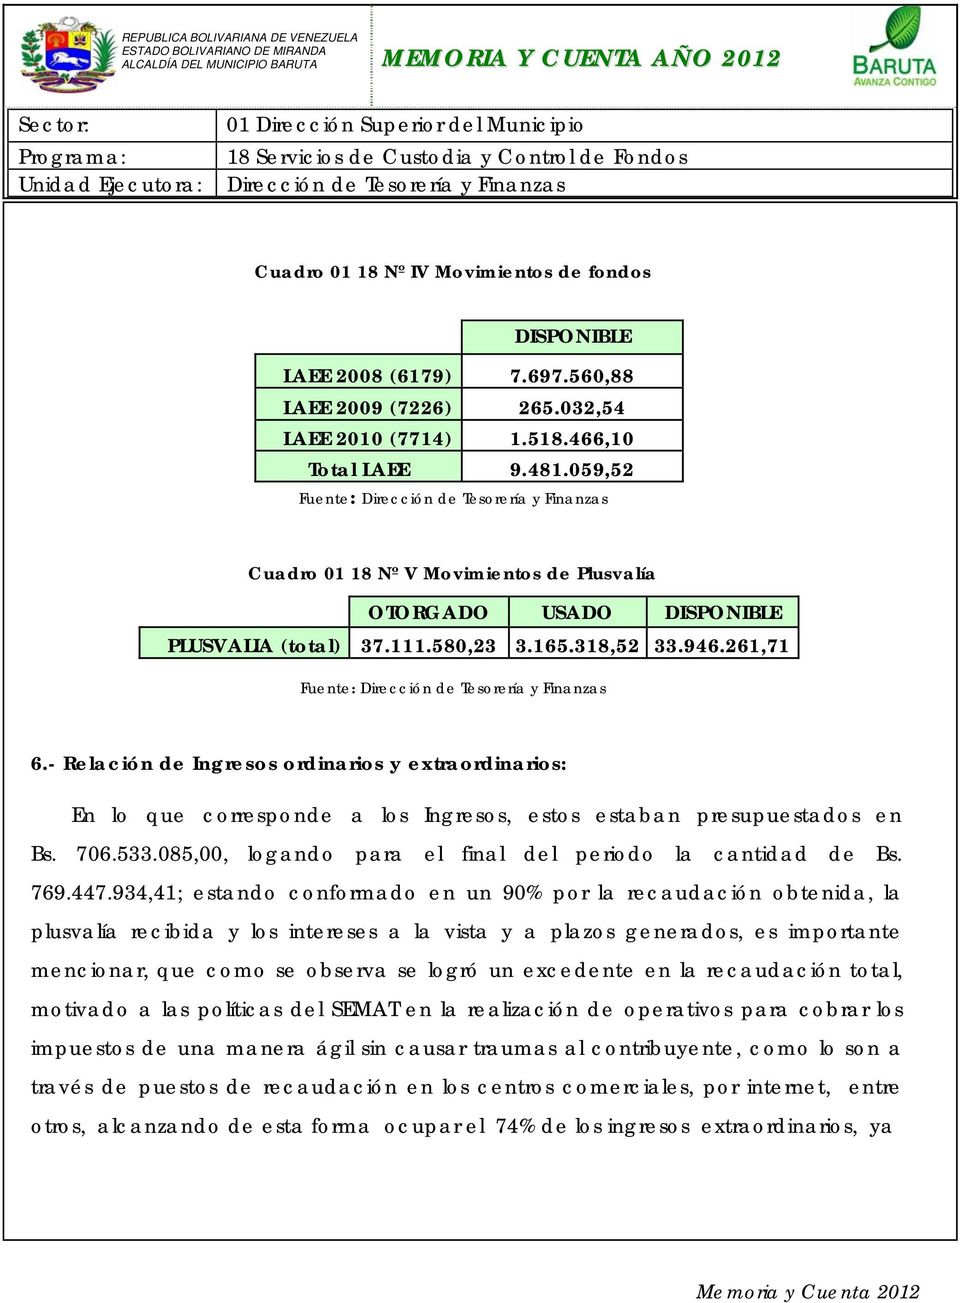 - Relación de Ingresos ordinarios y extraordinarios: En lo que corresponde a los Ingresos, estos estaban presupuestados en Bs. 706.533.085,00, logando para el final del periodo la cantidad de Bs. 769.